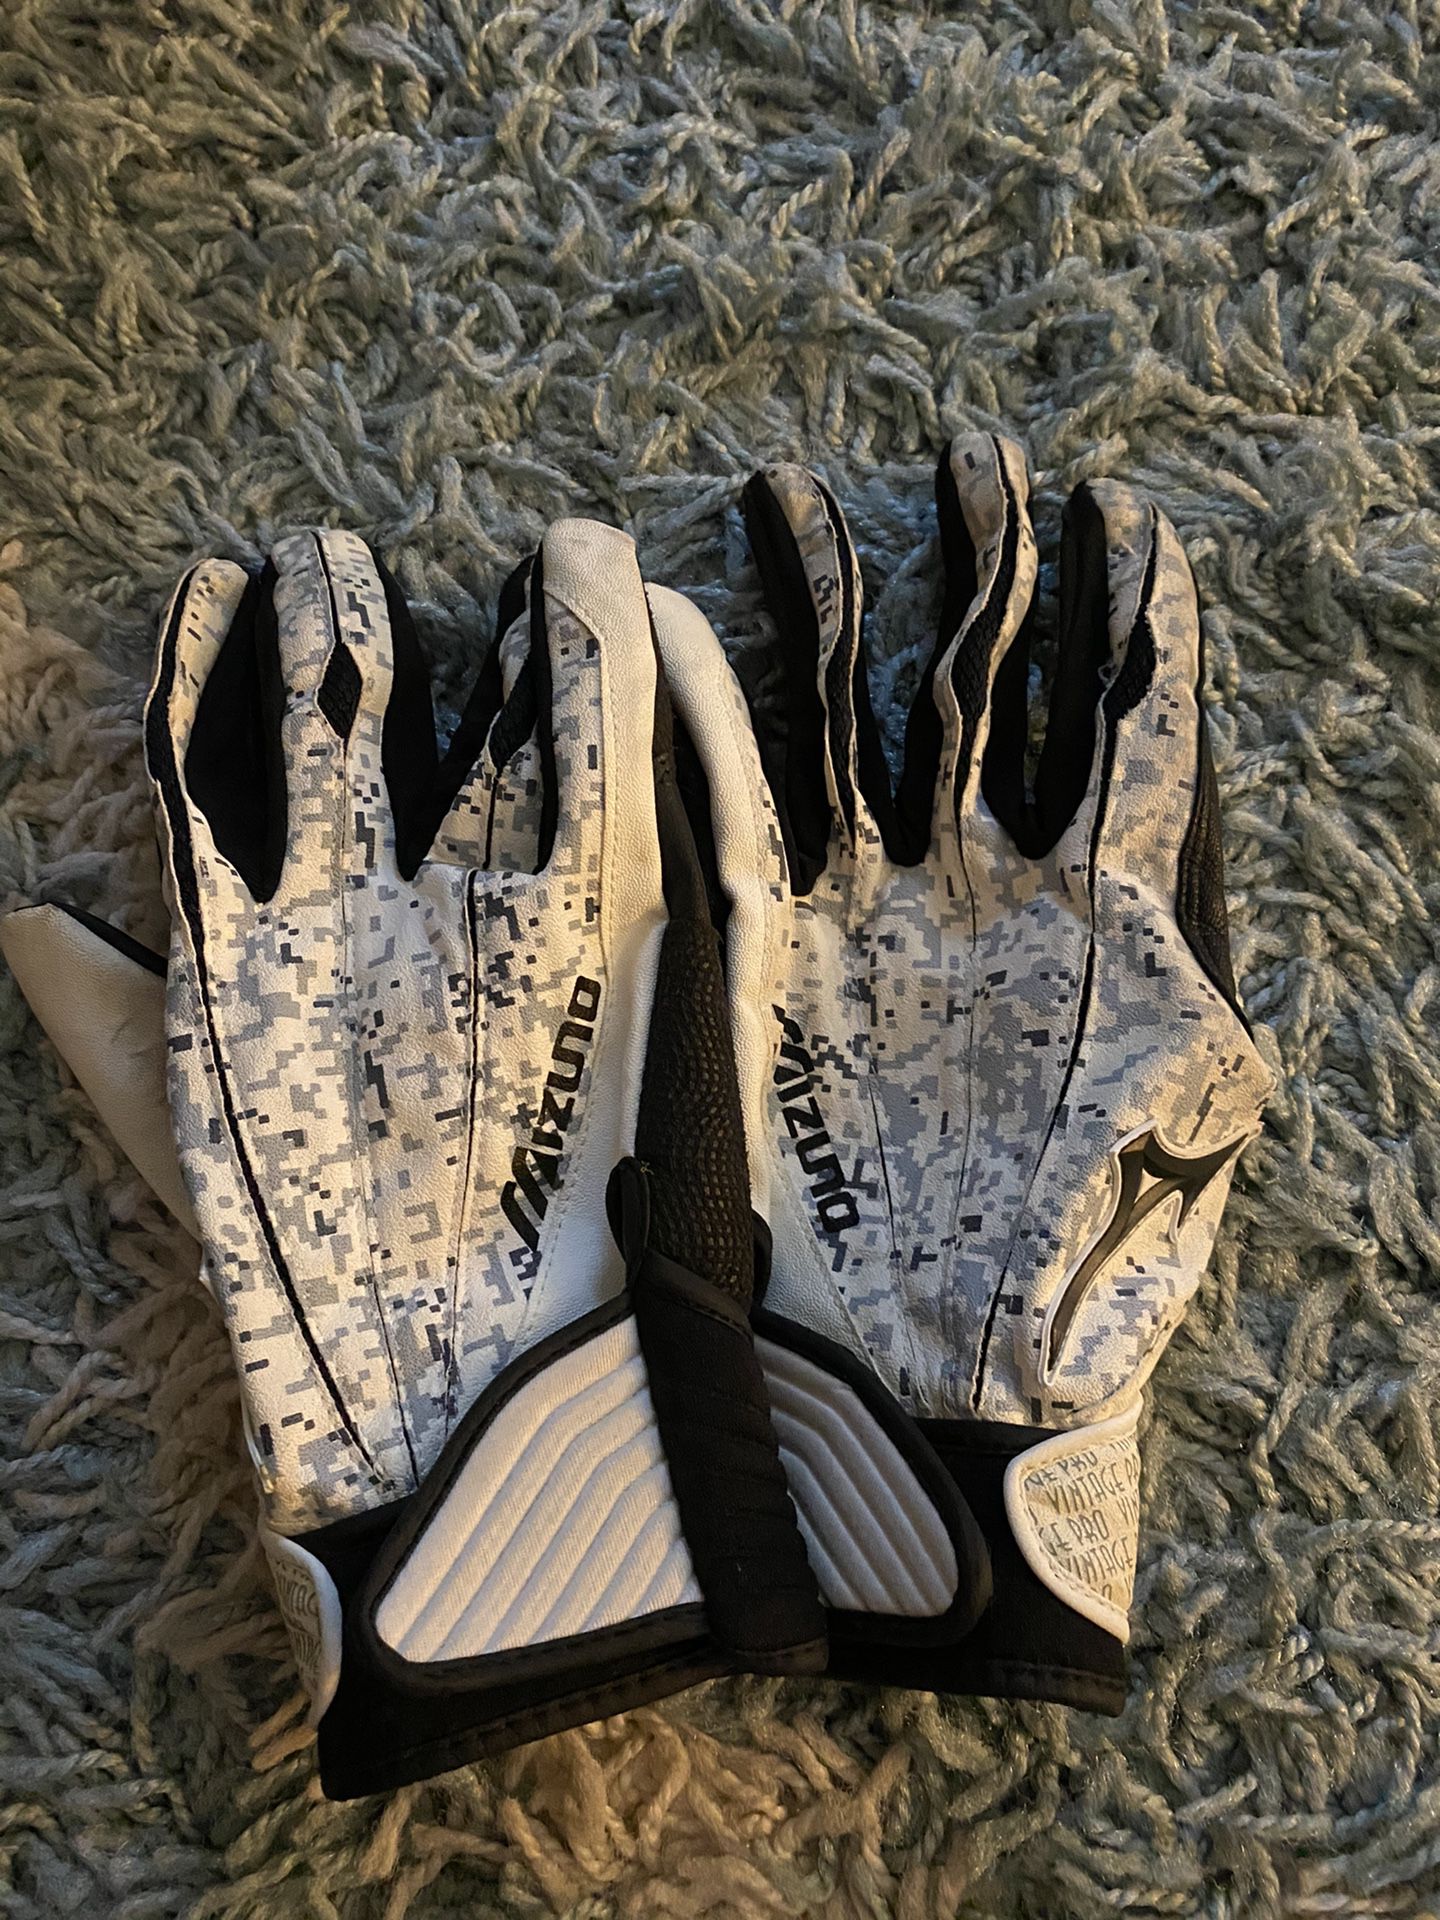 Men’s Softball / Baseball Gloves Like NEW